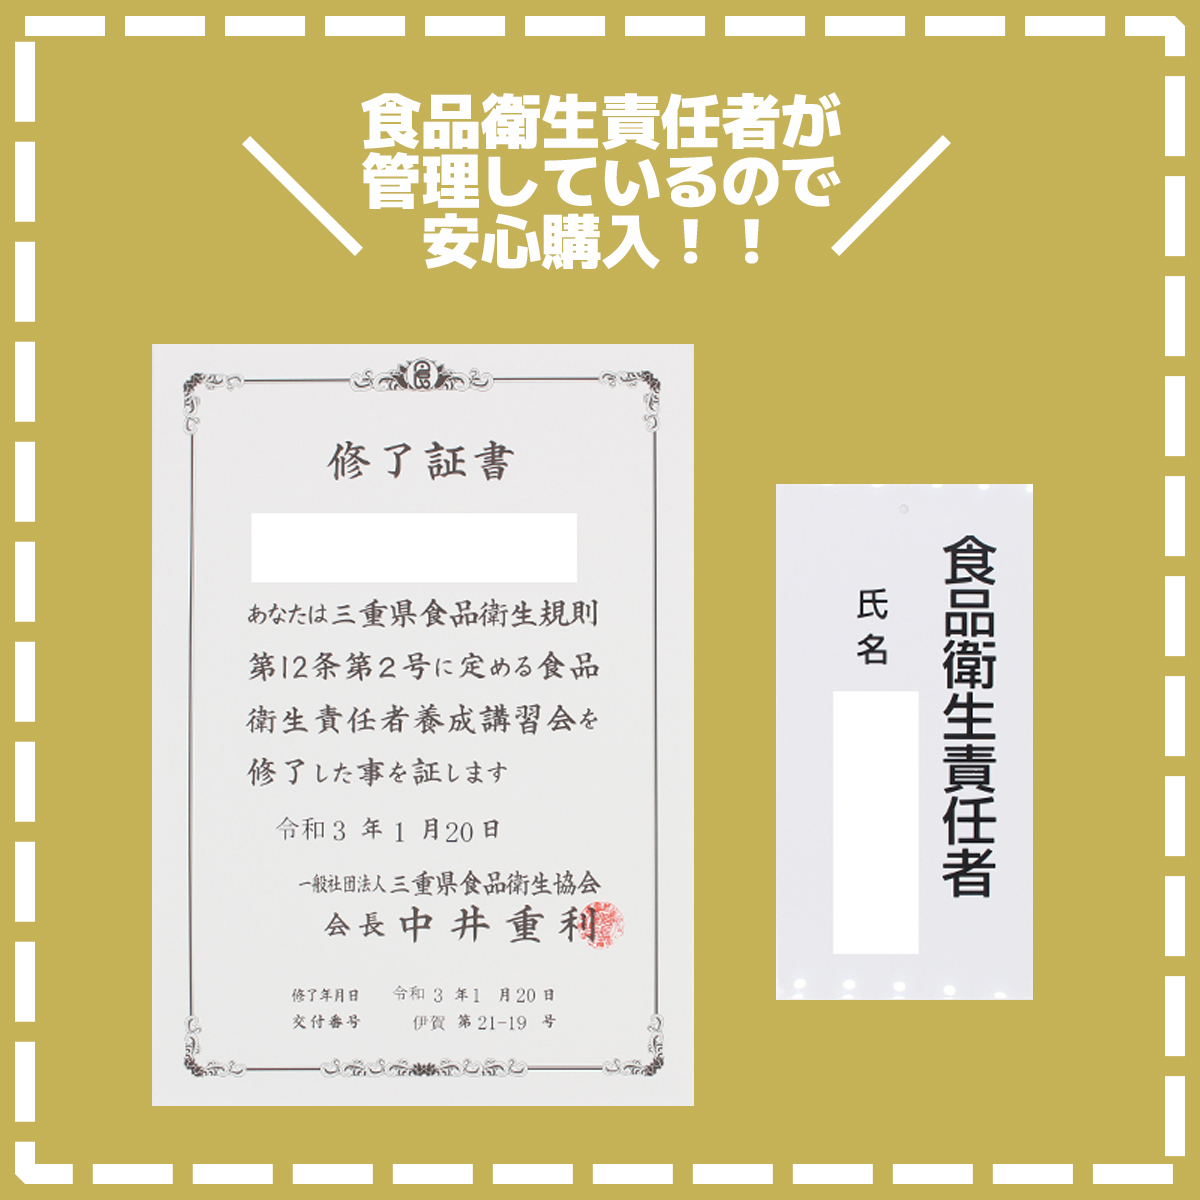 [ быстрое решение бесплатная доставка ] The автобус Athlete вес down шоколад тест 945g×3 пакет Meiji SAVAS скумбиря s белок качество .tore вес down s034